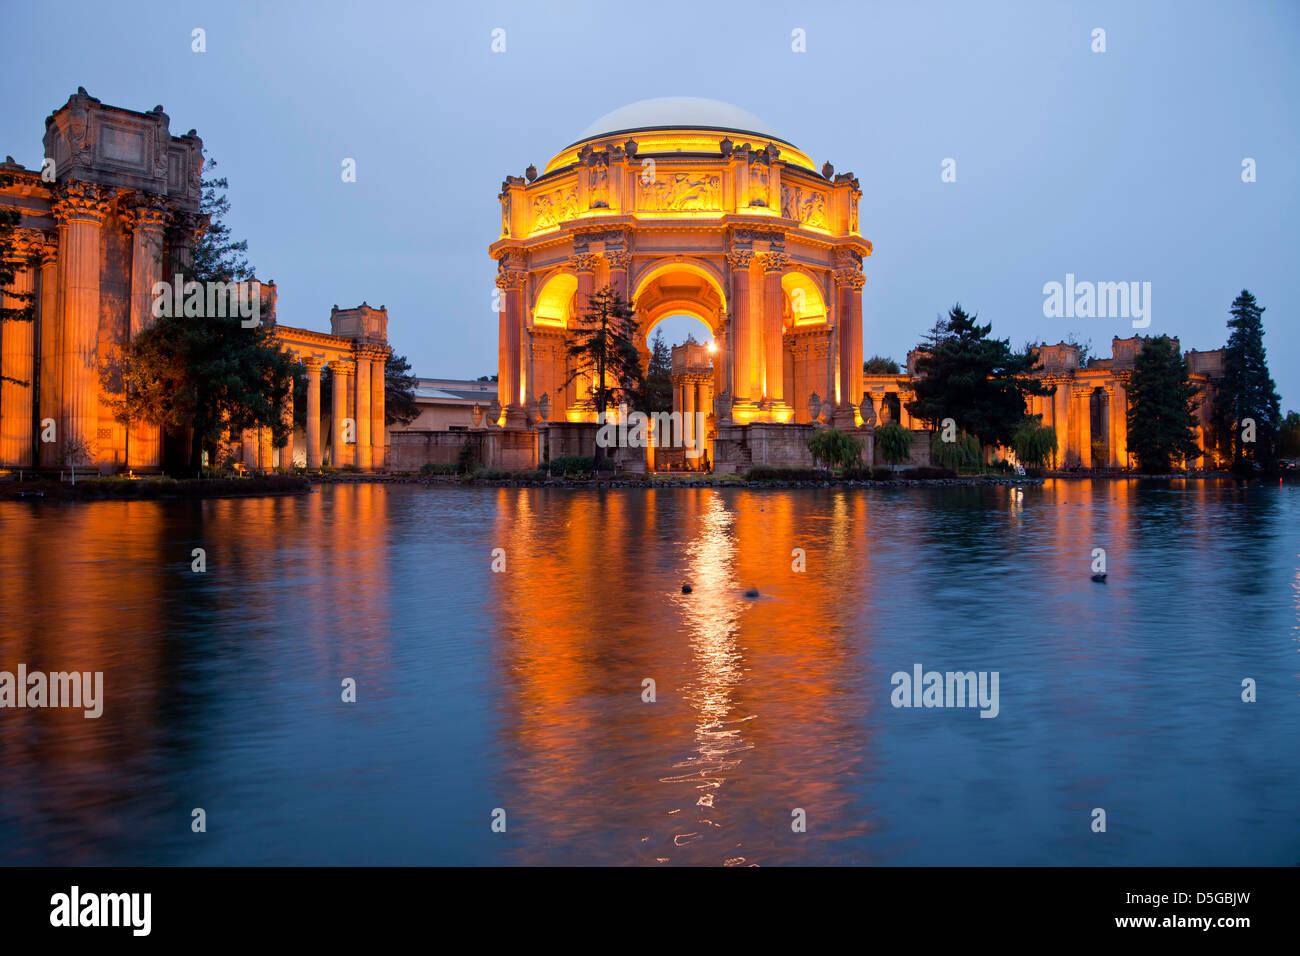 die beleuchtete Palace of Fine Arts im Marina District in San Francisco bei Nacht, Kalifornien, Vereinigte Staaten von Amerika, USA Stockfoto